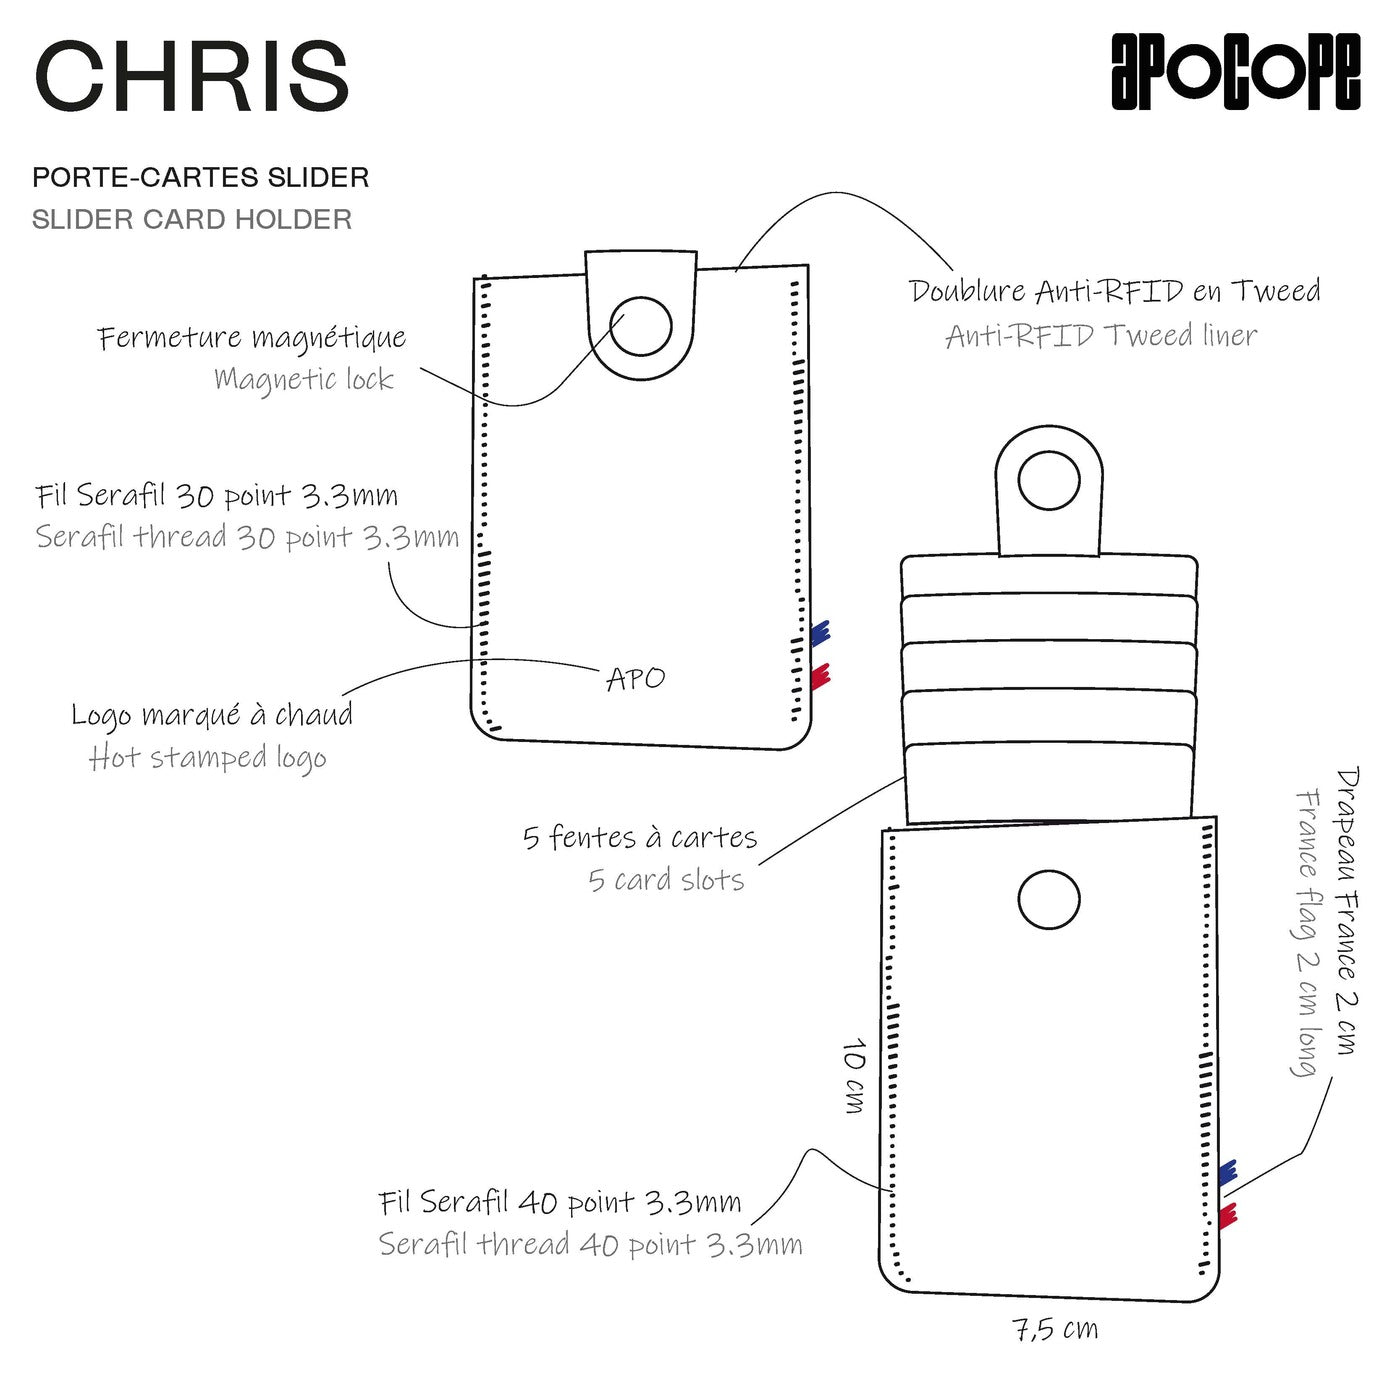 CHRIS - Porte-cartes slider en cuir recyclé - Gris